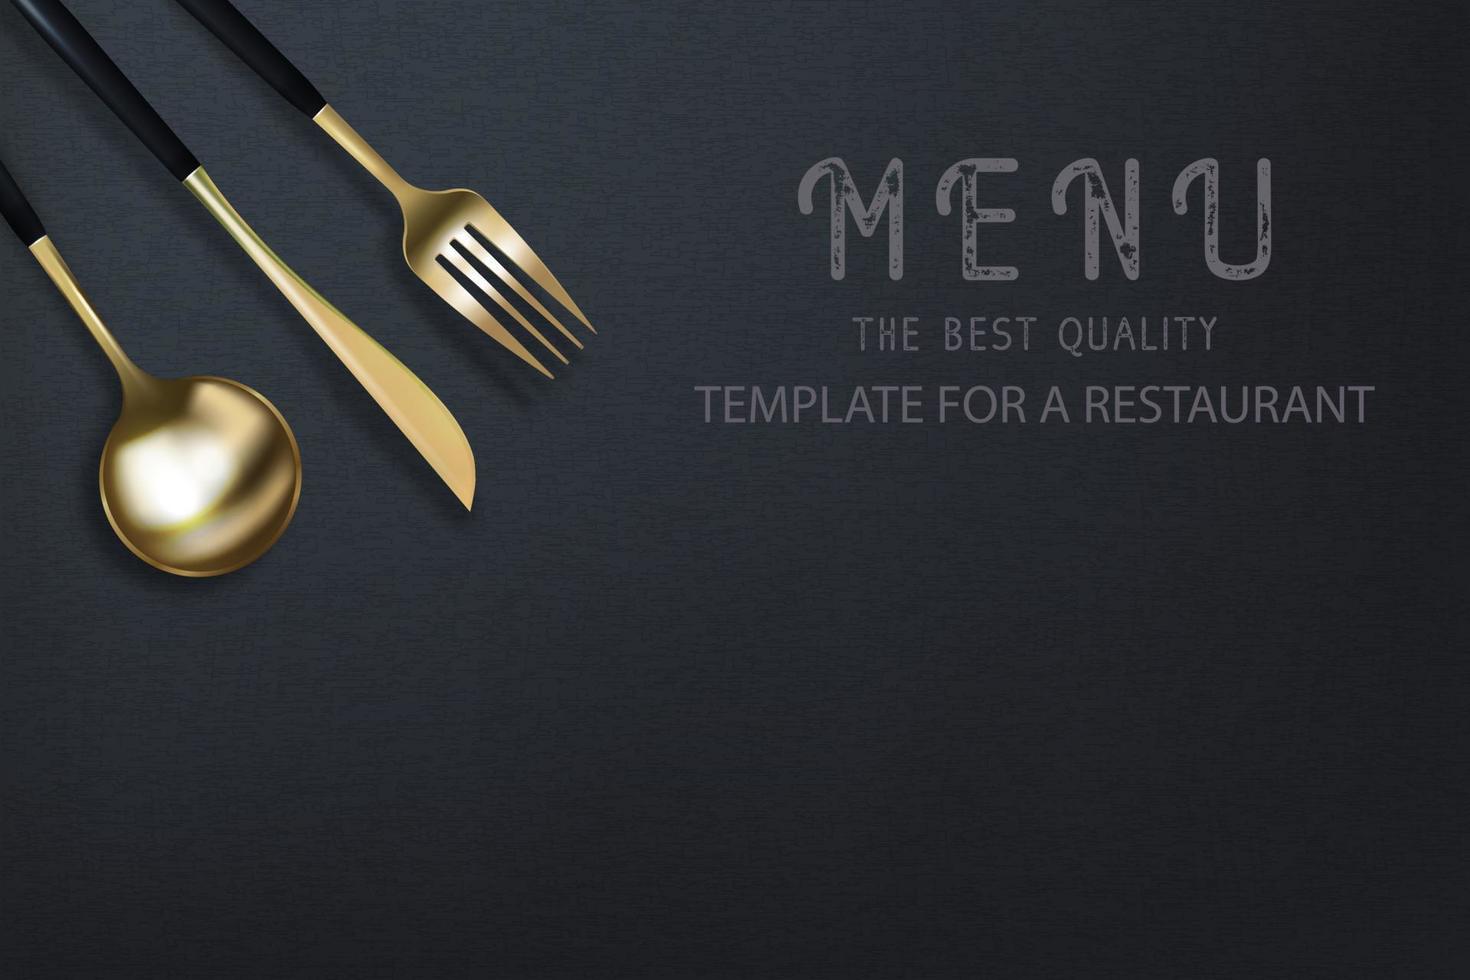 tenedor, cuchillo y cuchara dorados 3d realistas sobre un fondo de grunge negro. cartel moderno de moda para un restaurante. ilustración de vector de vista superior.